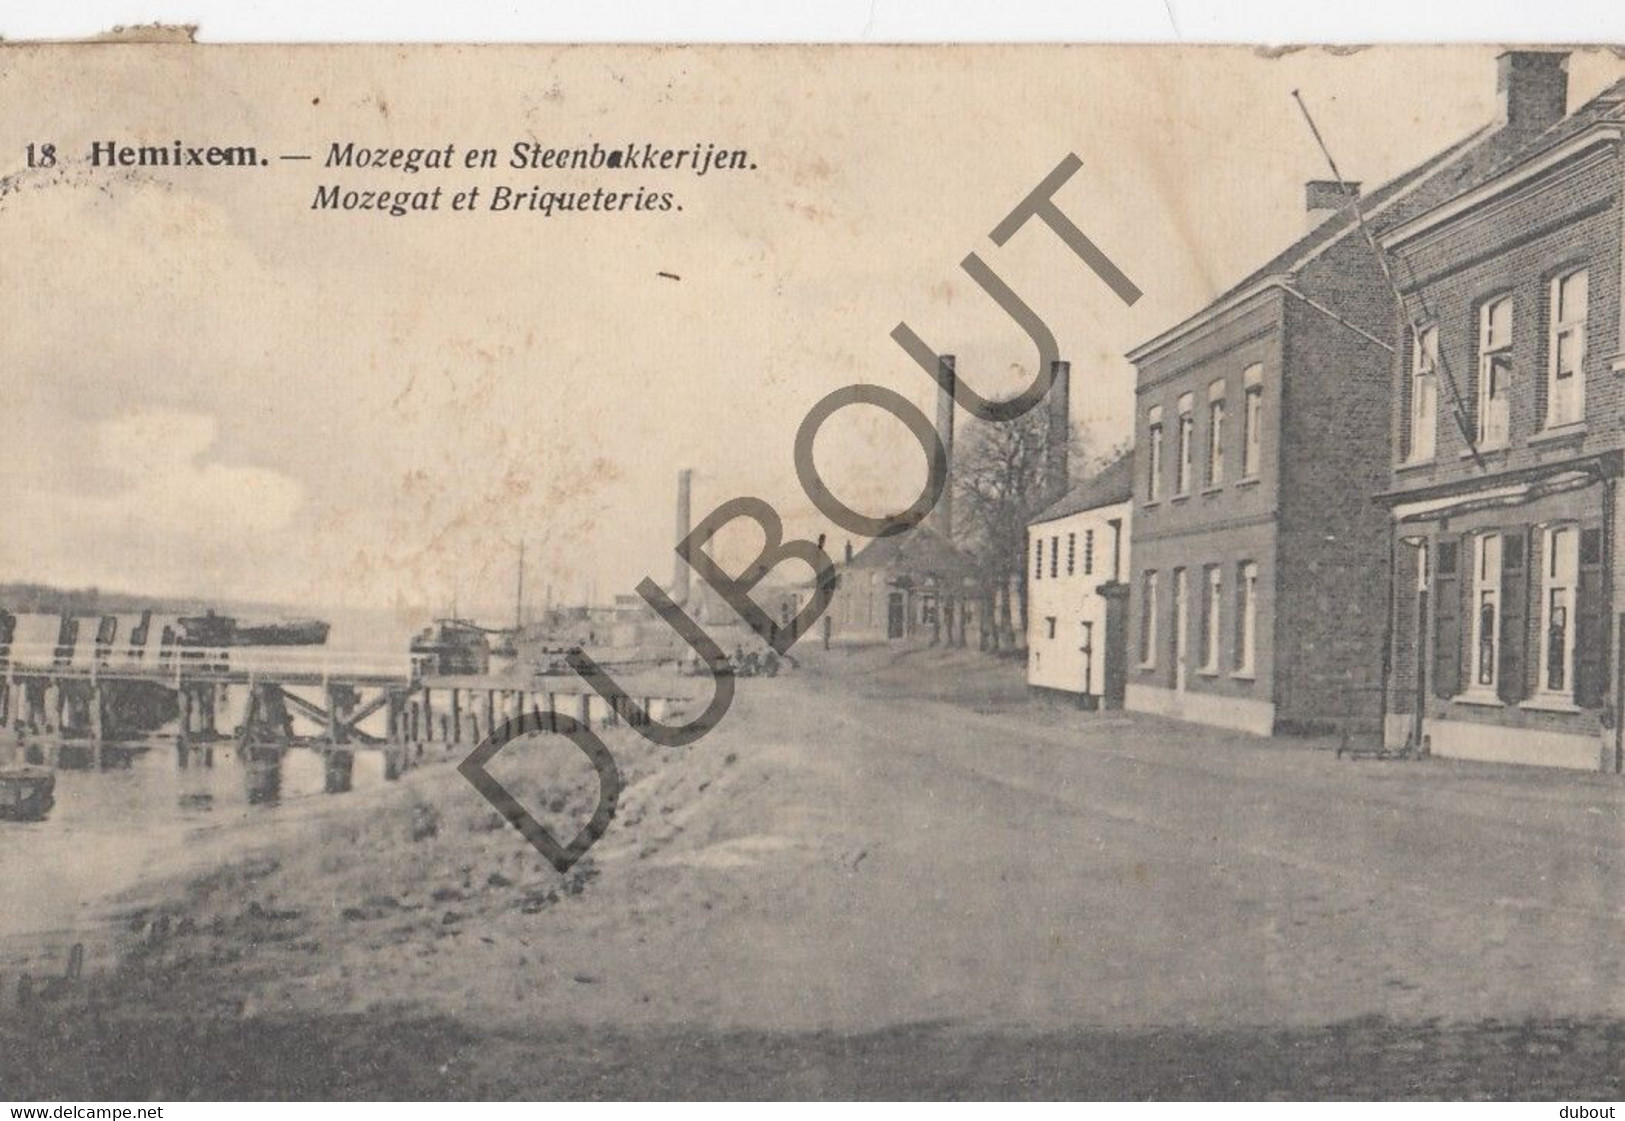 Postkaart/Carte Postale HEMIKSEM - Mozegat En Steenbakkerijen (C1232) - Hemiksem